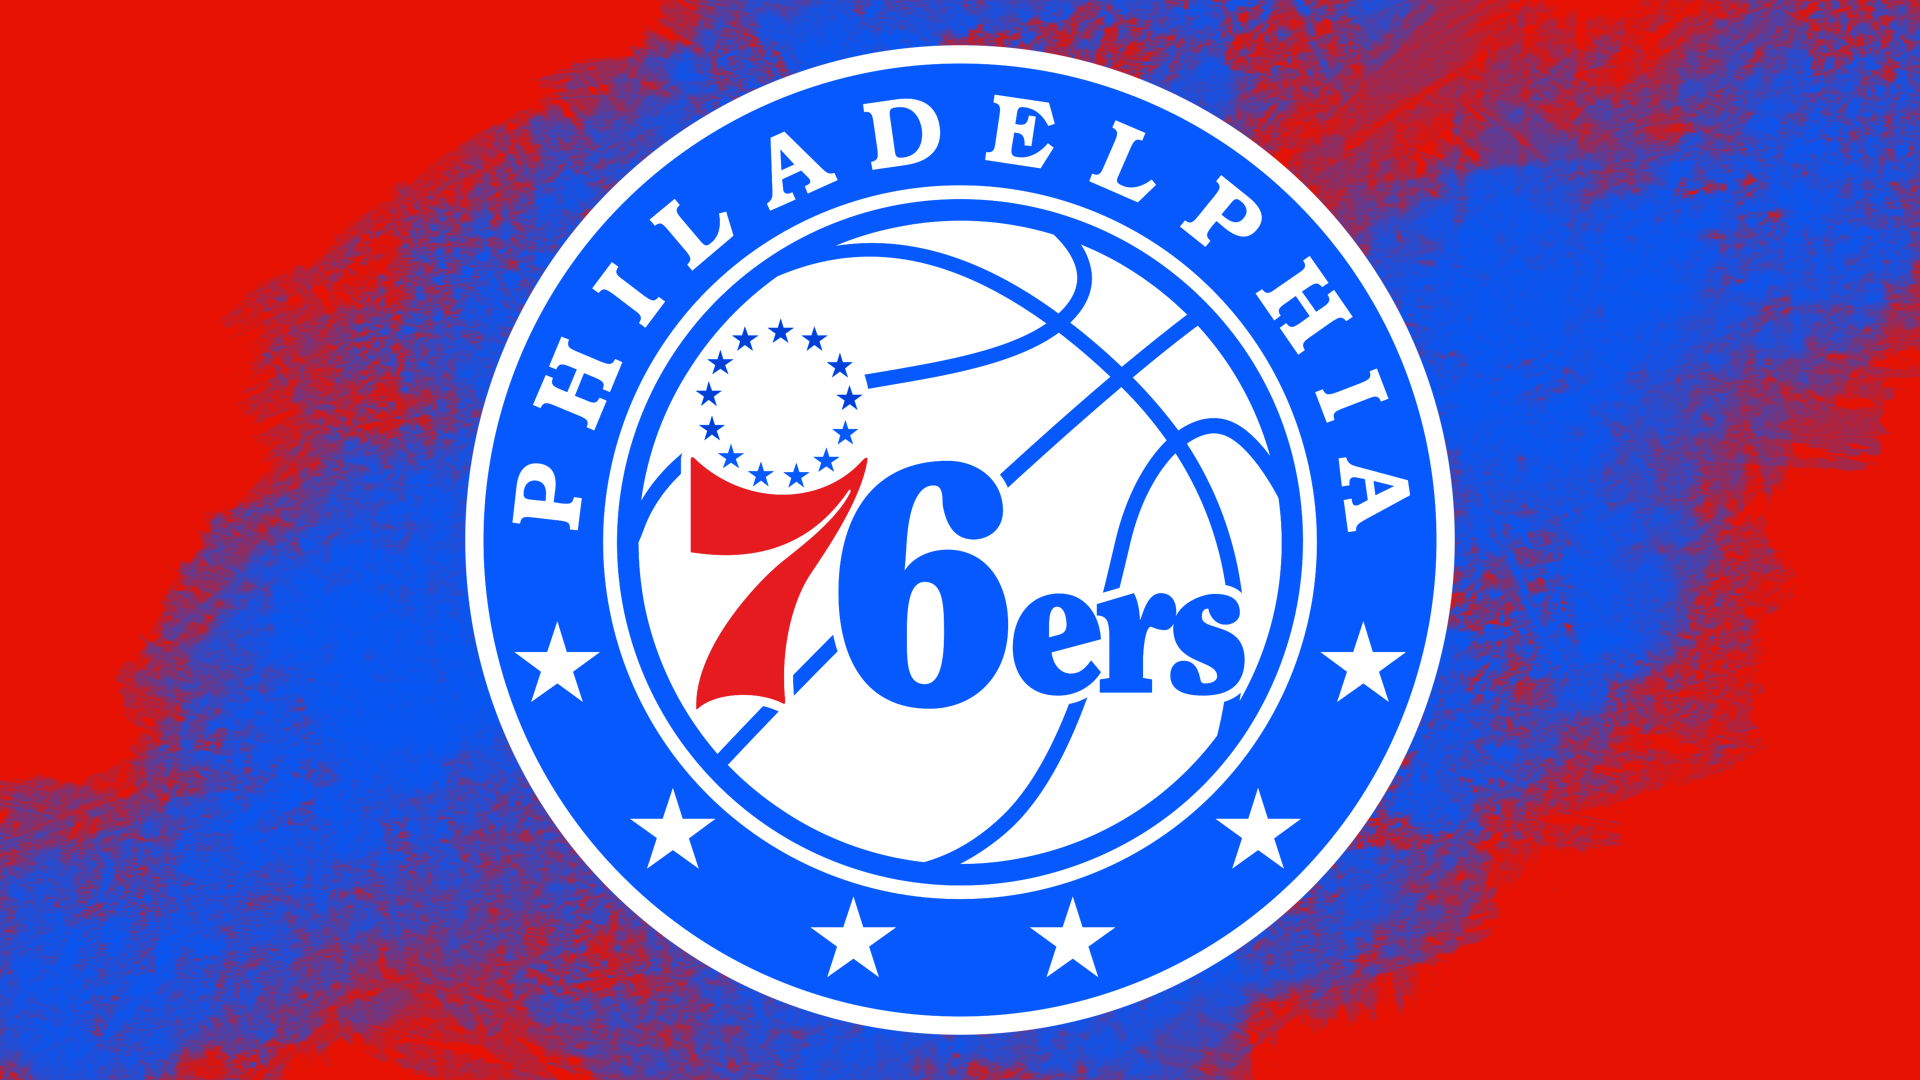 Nba Basketball Emblem Logo 1920x1080